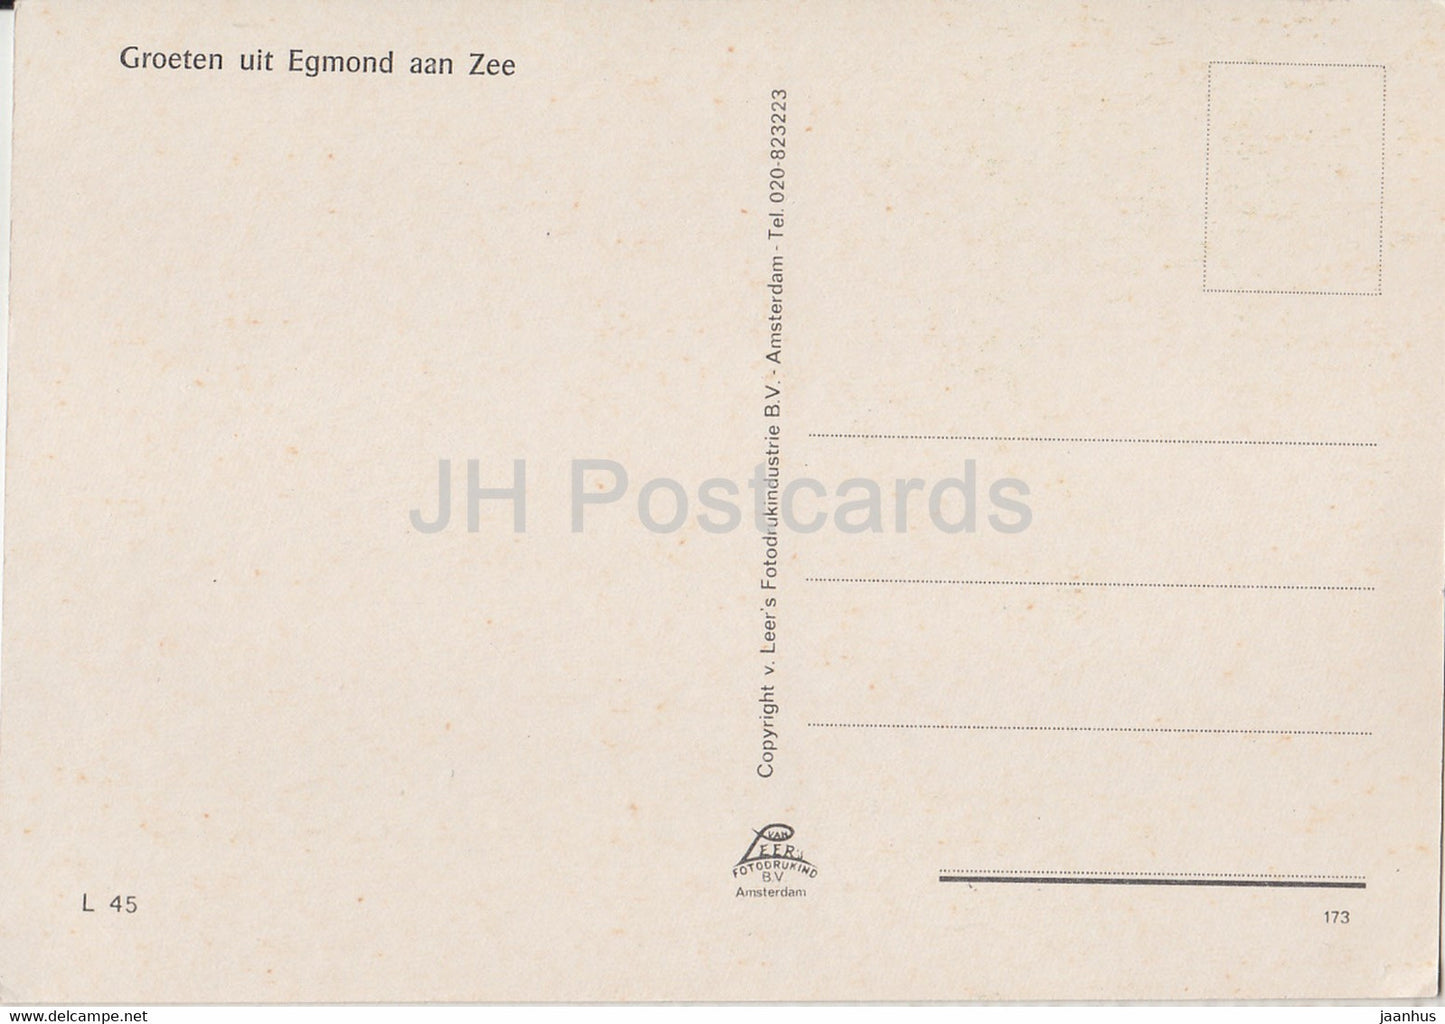 Groeten uit Egmond aan Zee - 442 - Netherlands - unused